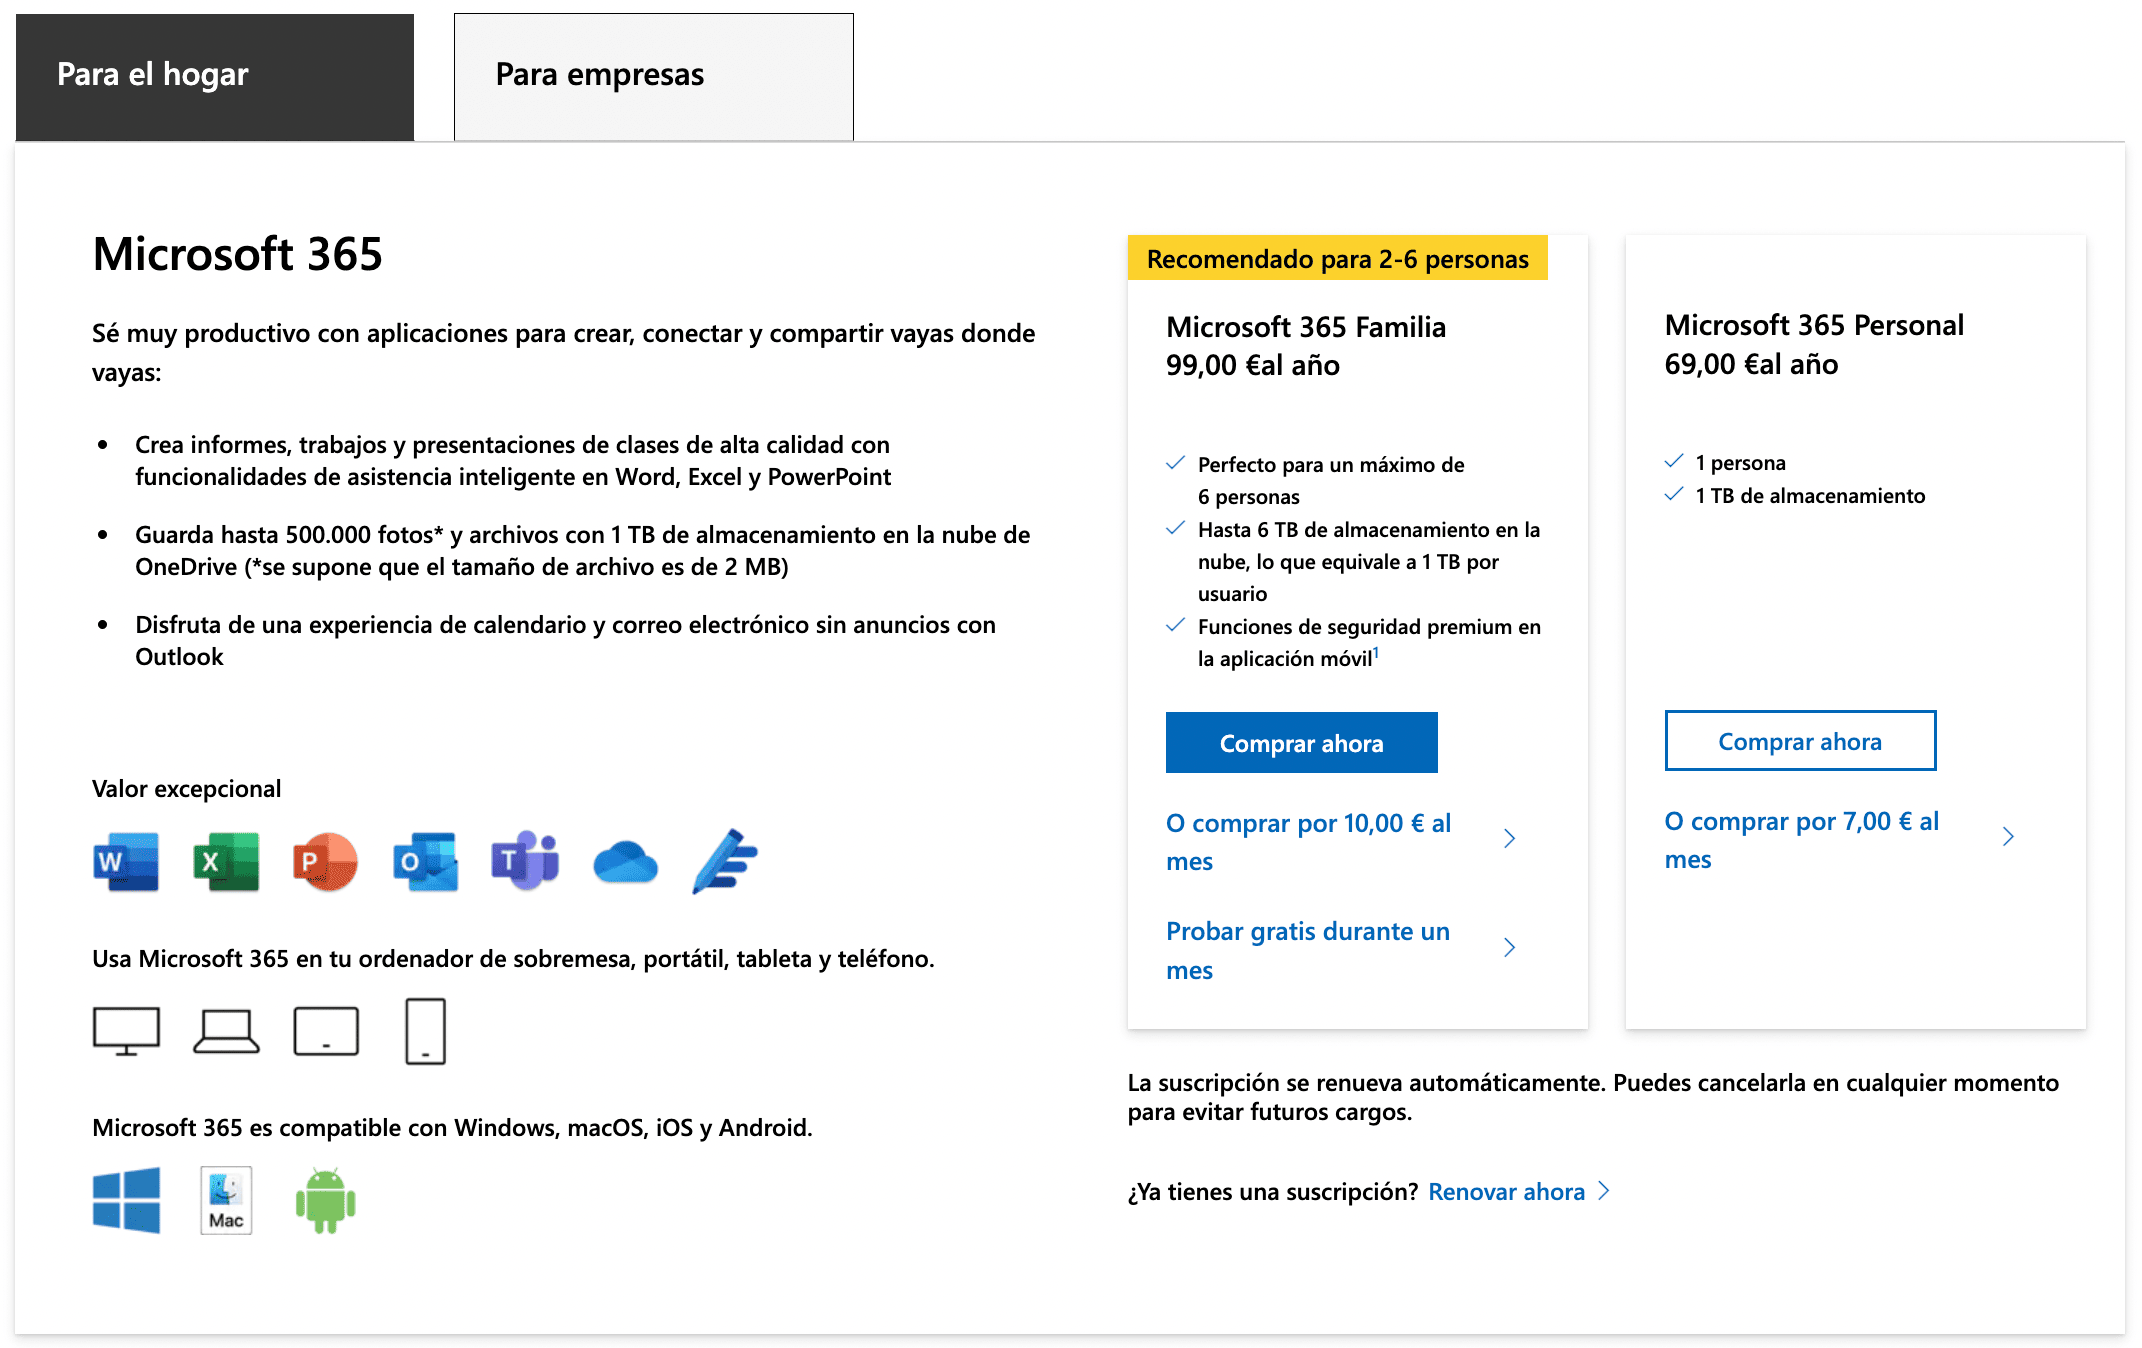 Precios de Microsoft 365 en su página oficial